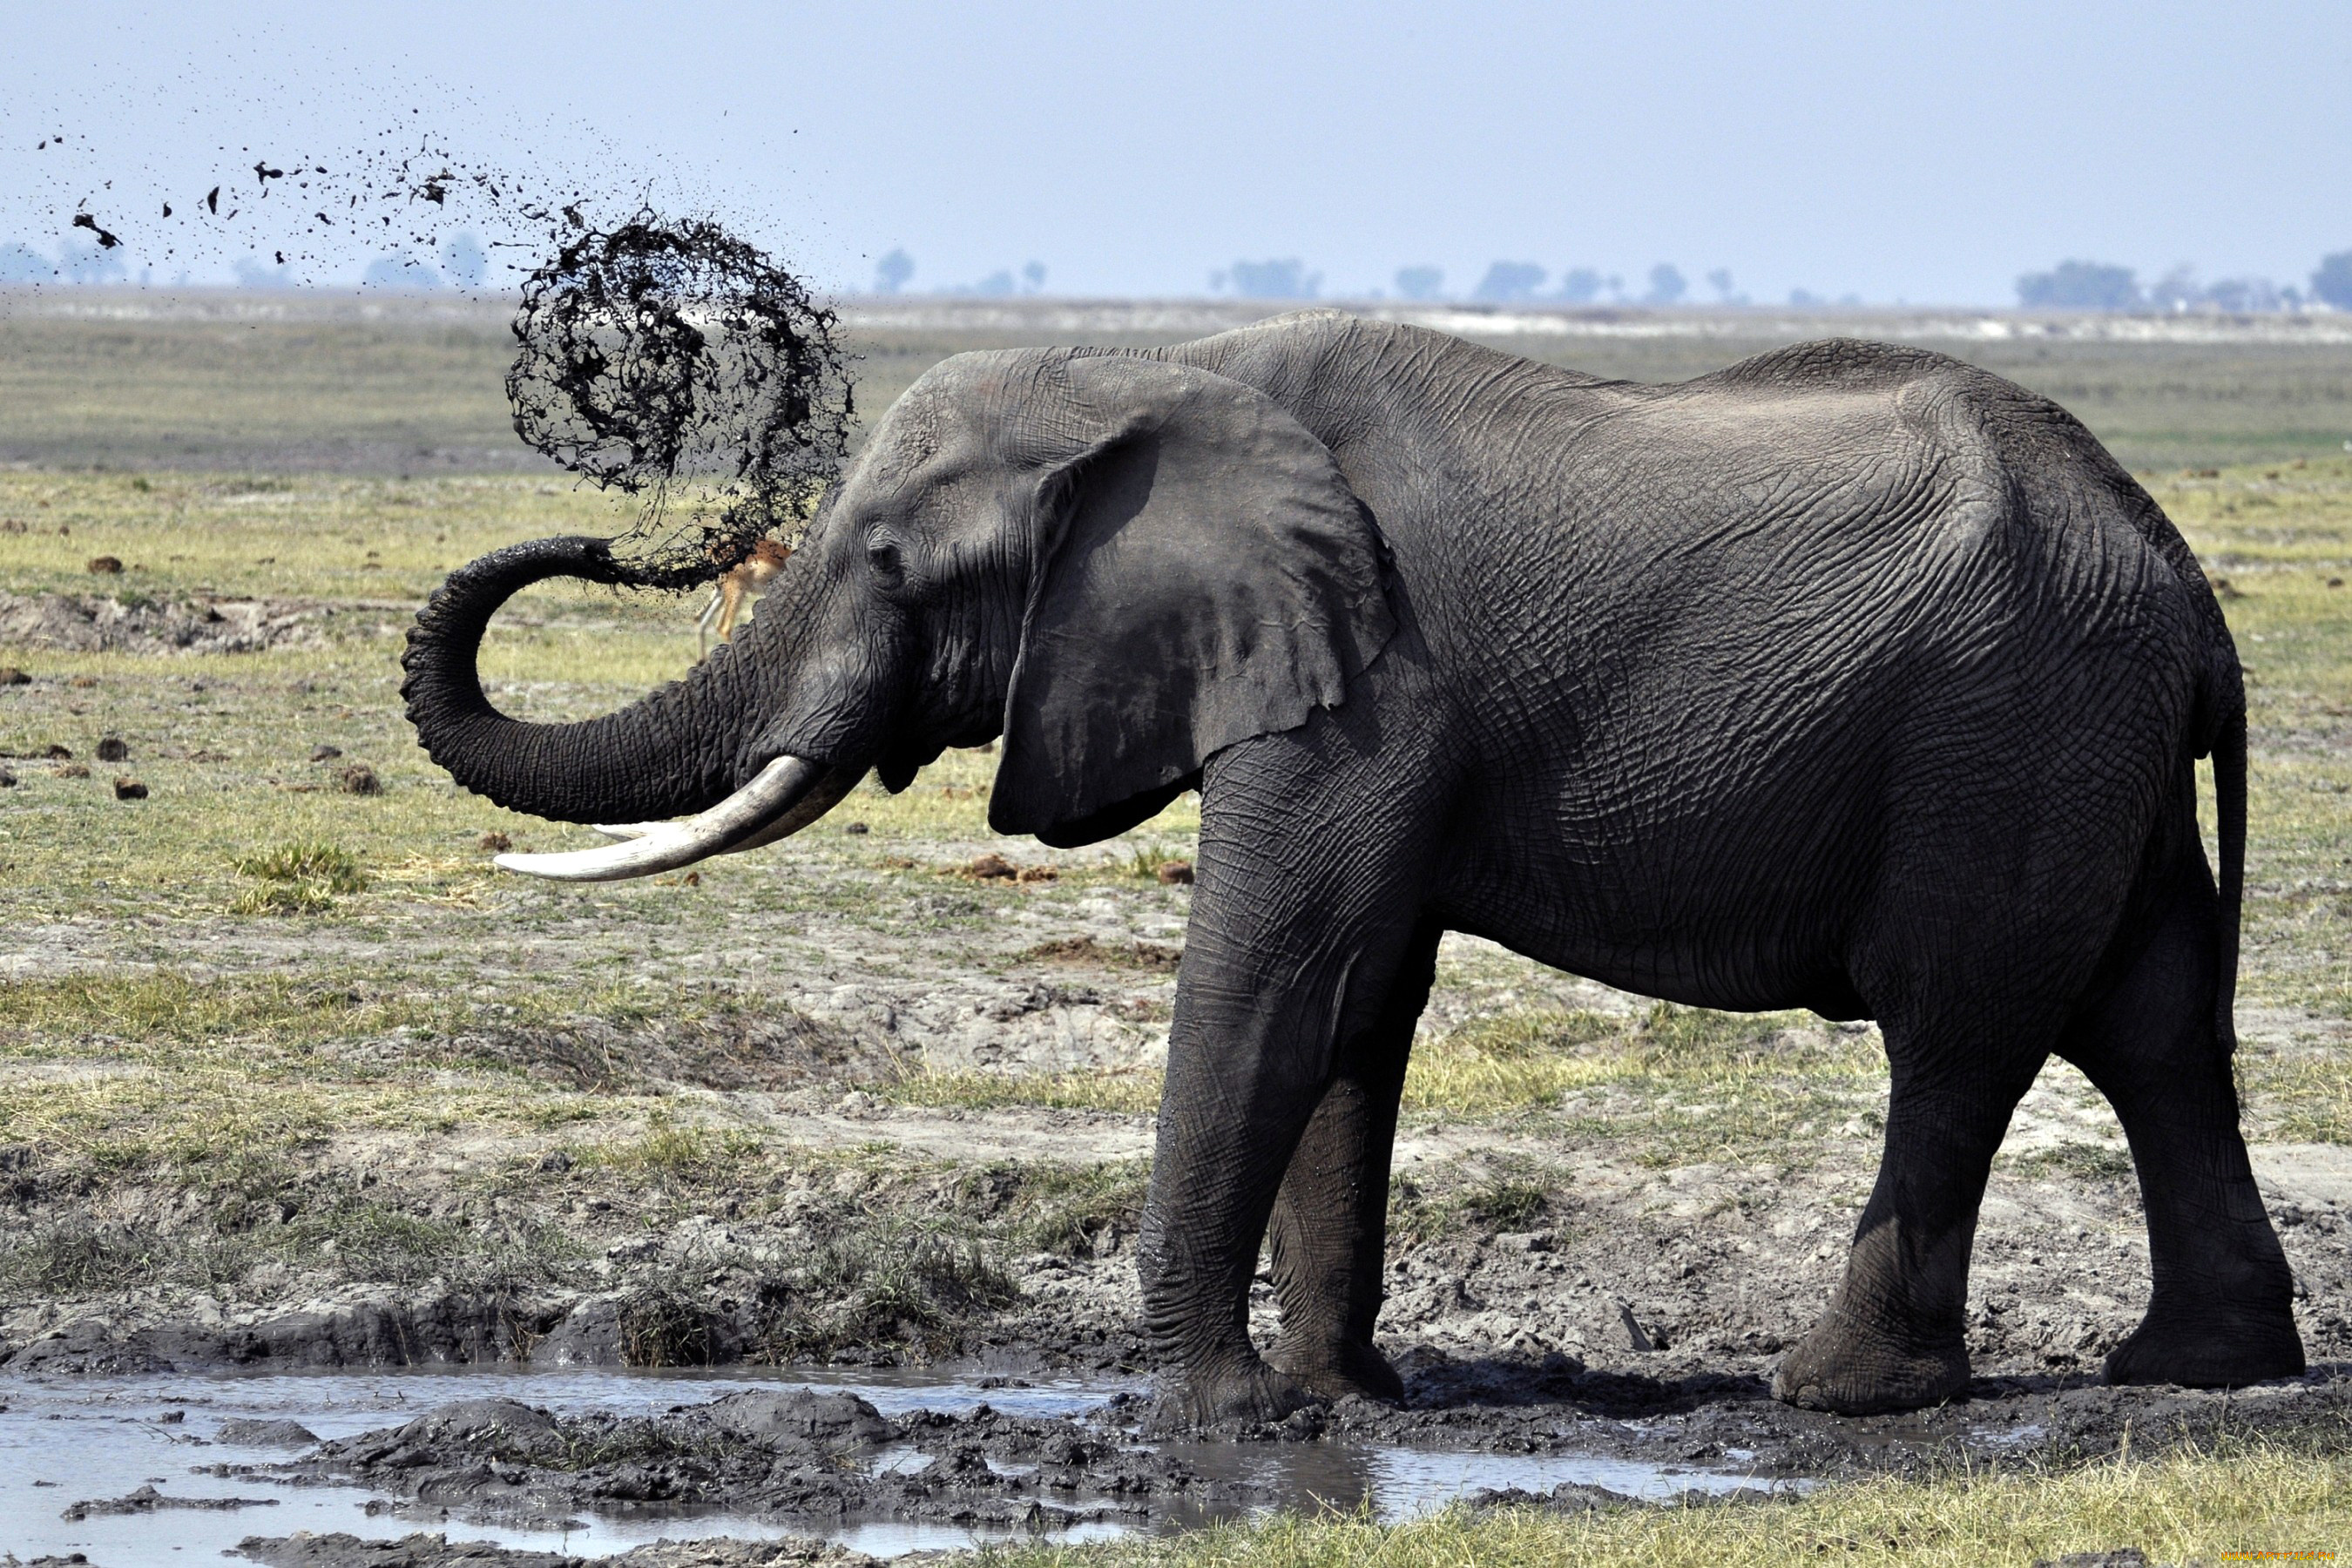 животные, слоны, грязь, бивни, уши, слон, животное, трава, деревья, природа, африка, хобот